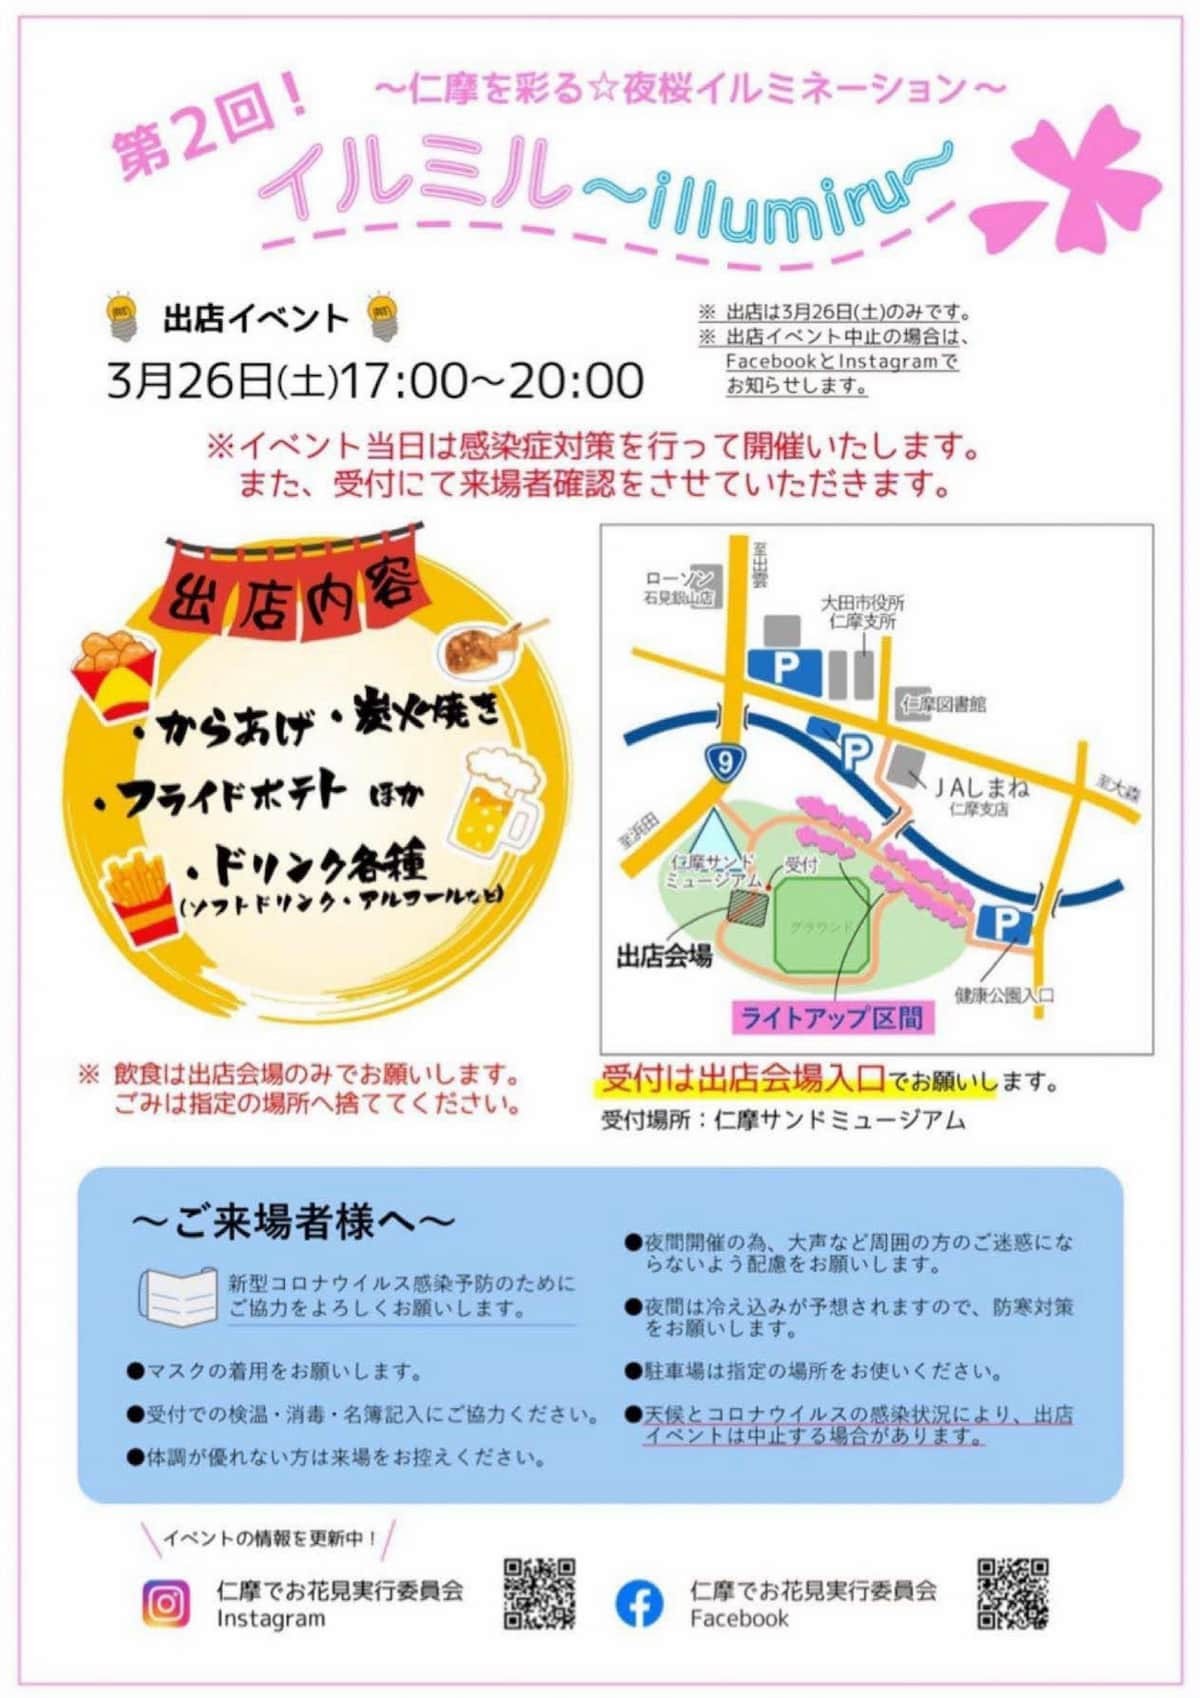 島根県大田市の観光スポット『仁摩サンドミュージアム』で開催中のイベント「イルミル」のイベント情報